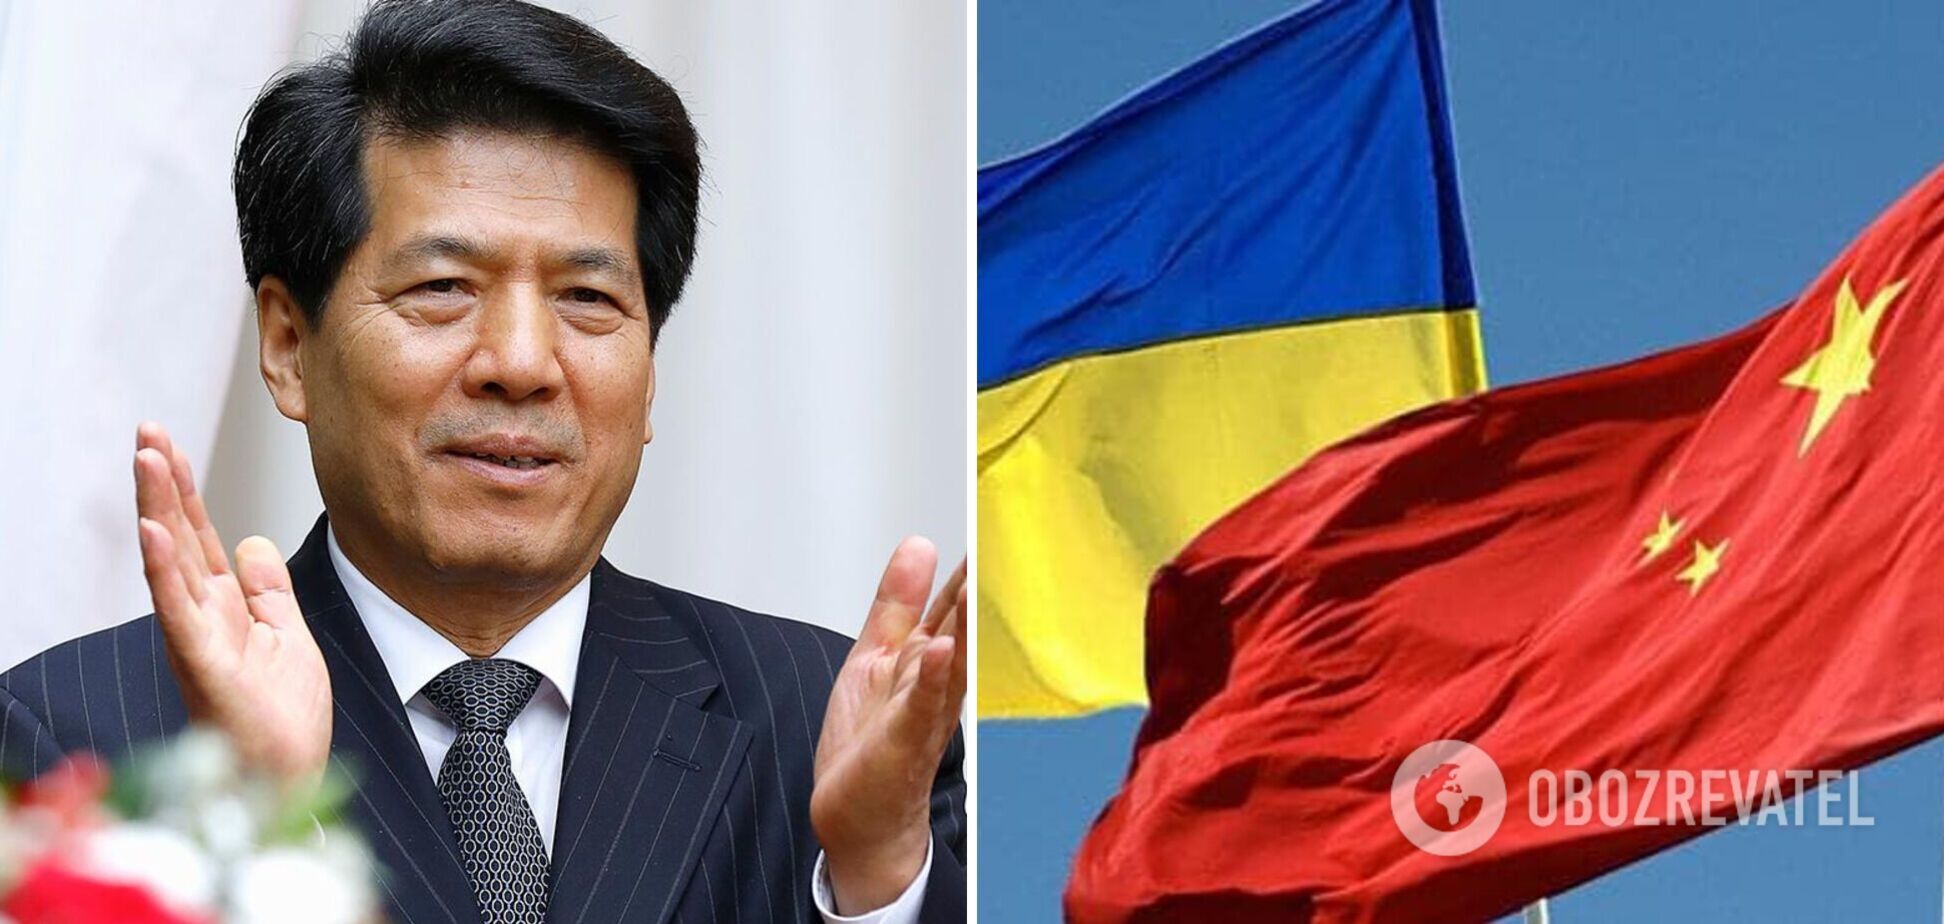 Спецпредставителем китайского правительства в Украине будет экс-посол Китая в России